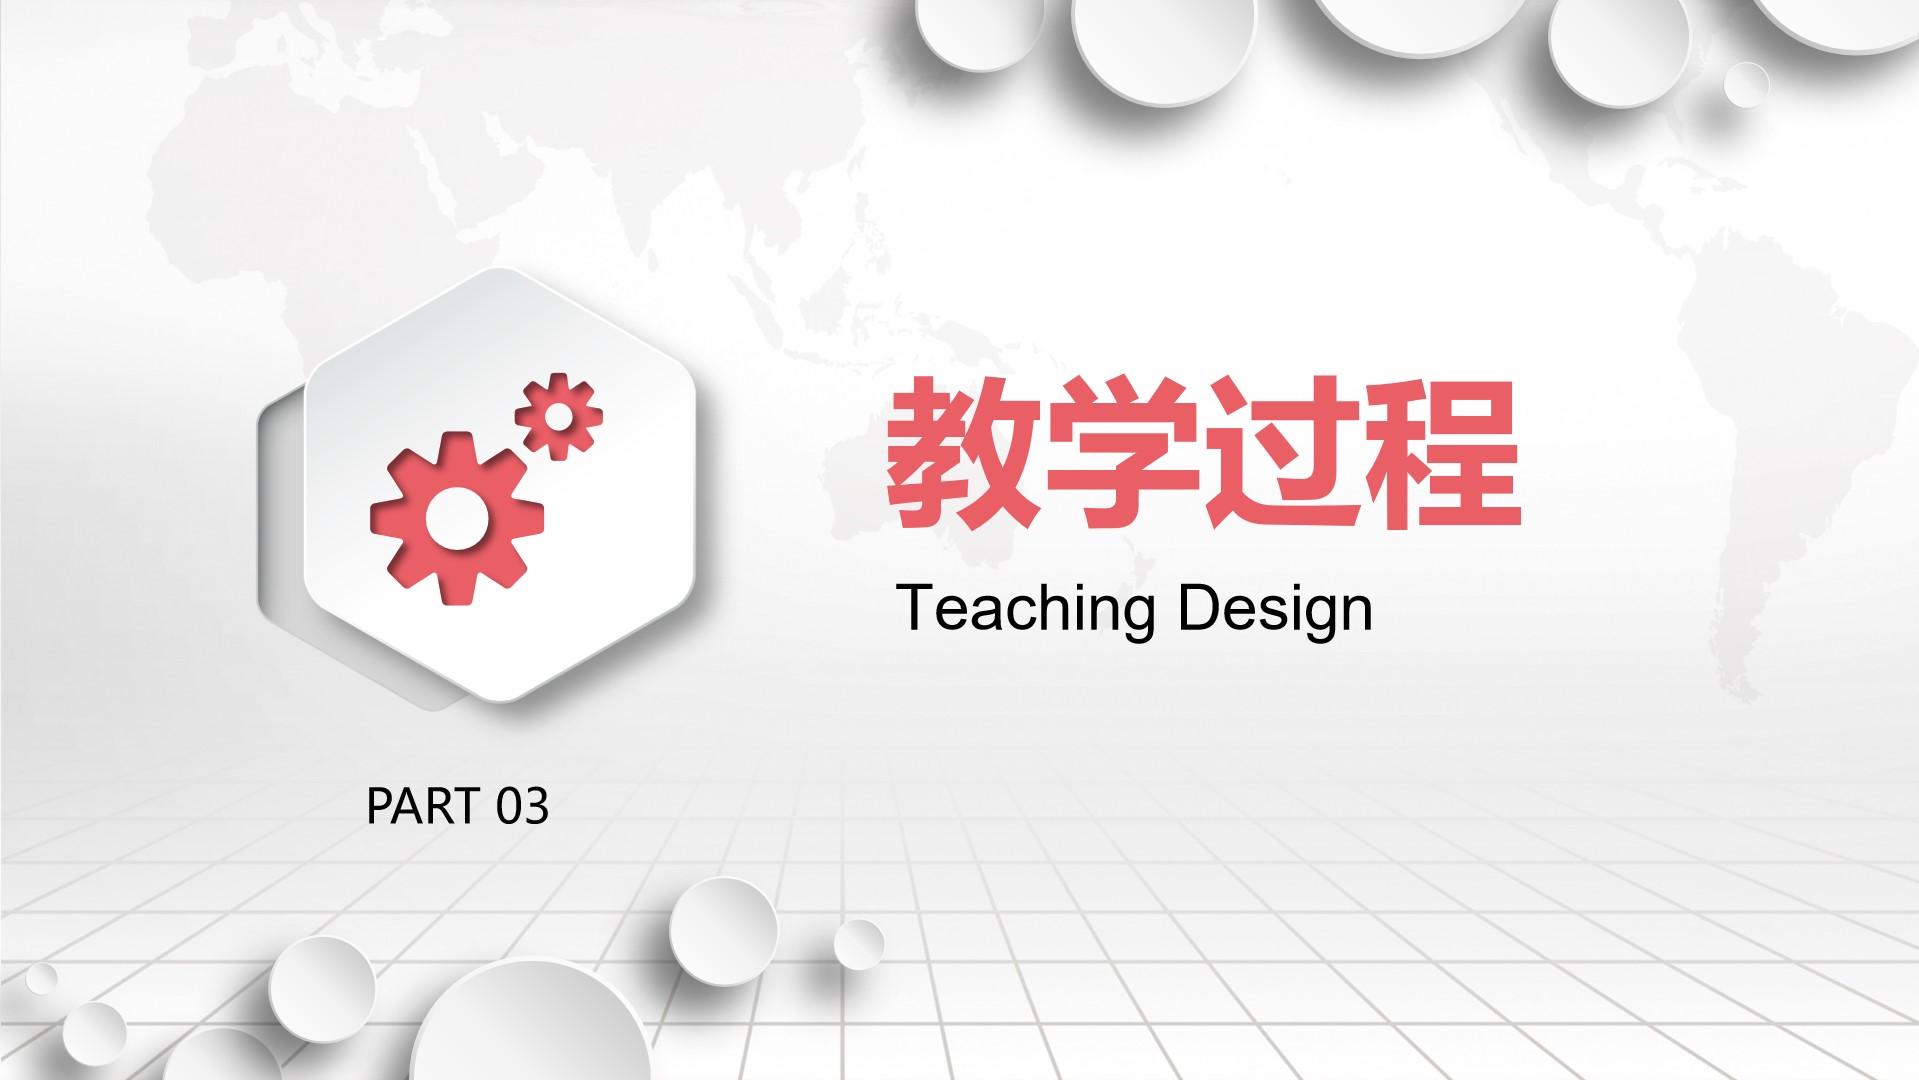 教育教学白色橙色素雅标准教学 过程 design云素材PPT模板1672757644104